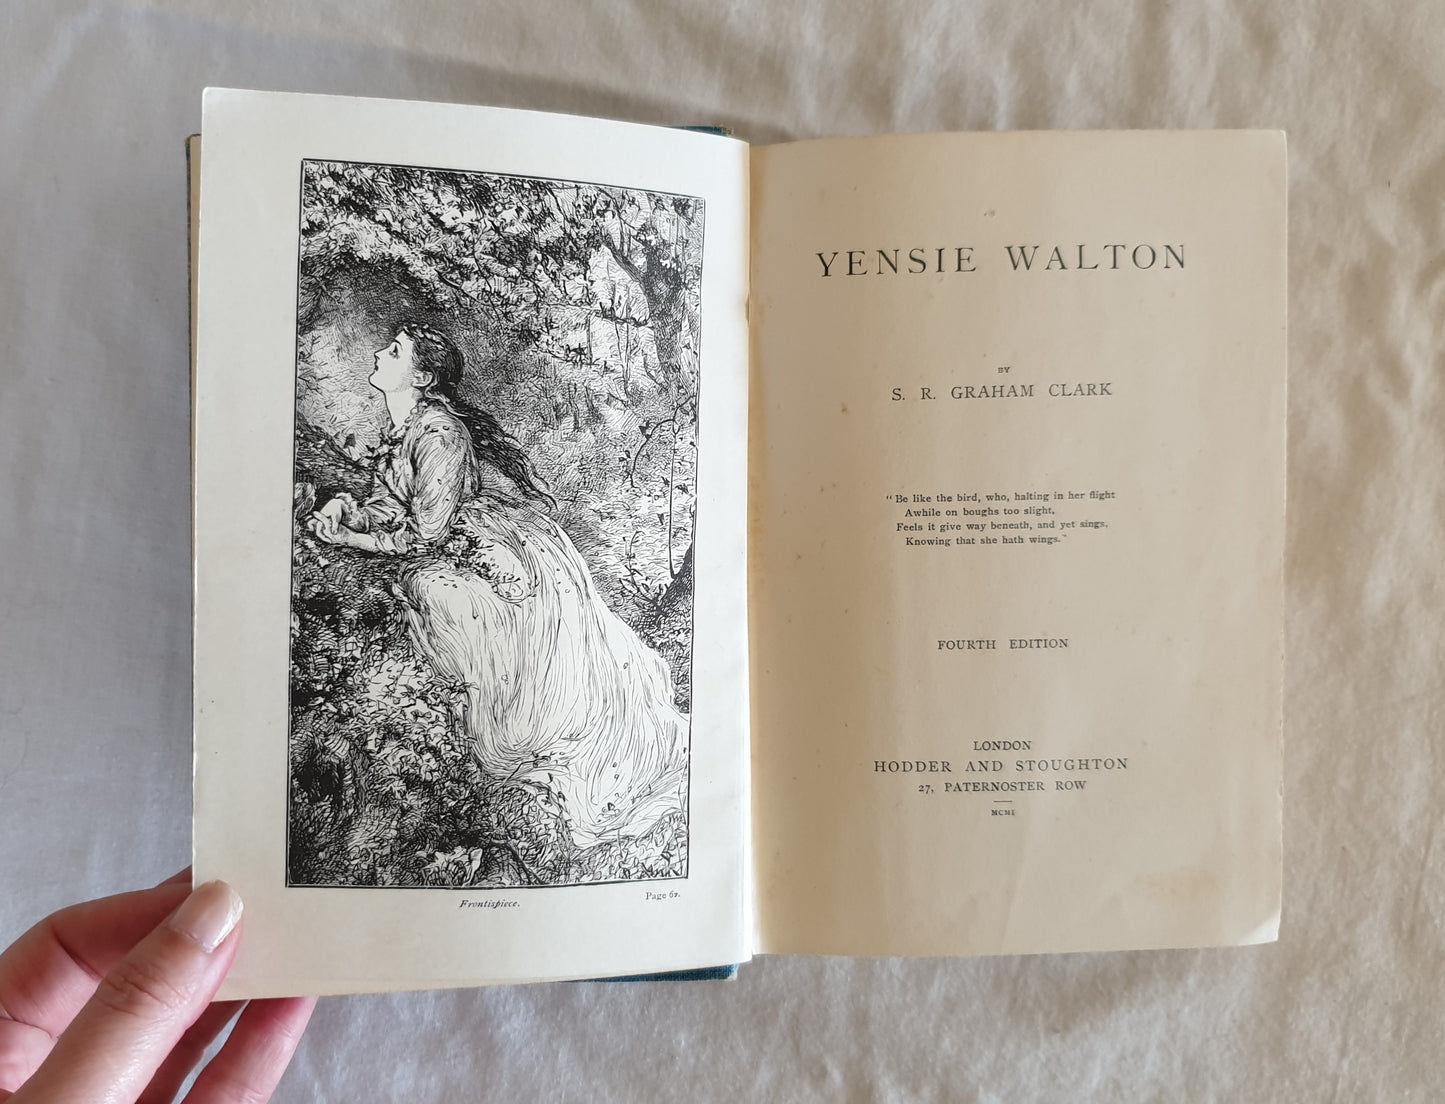 Yensie Walton by S. R. Graham Clark